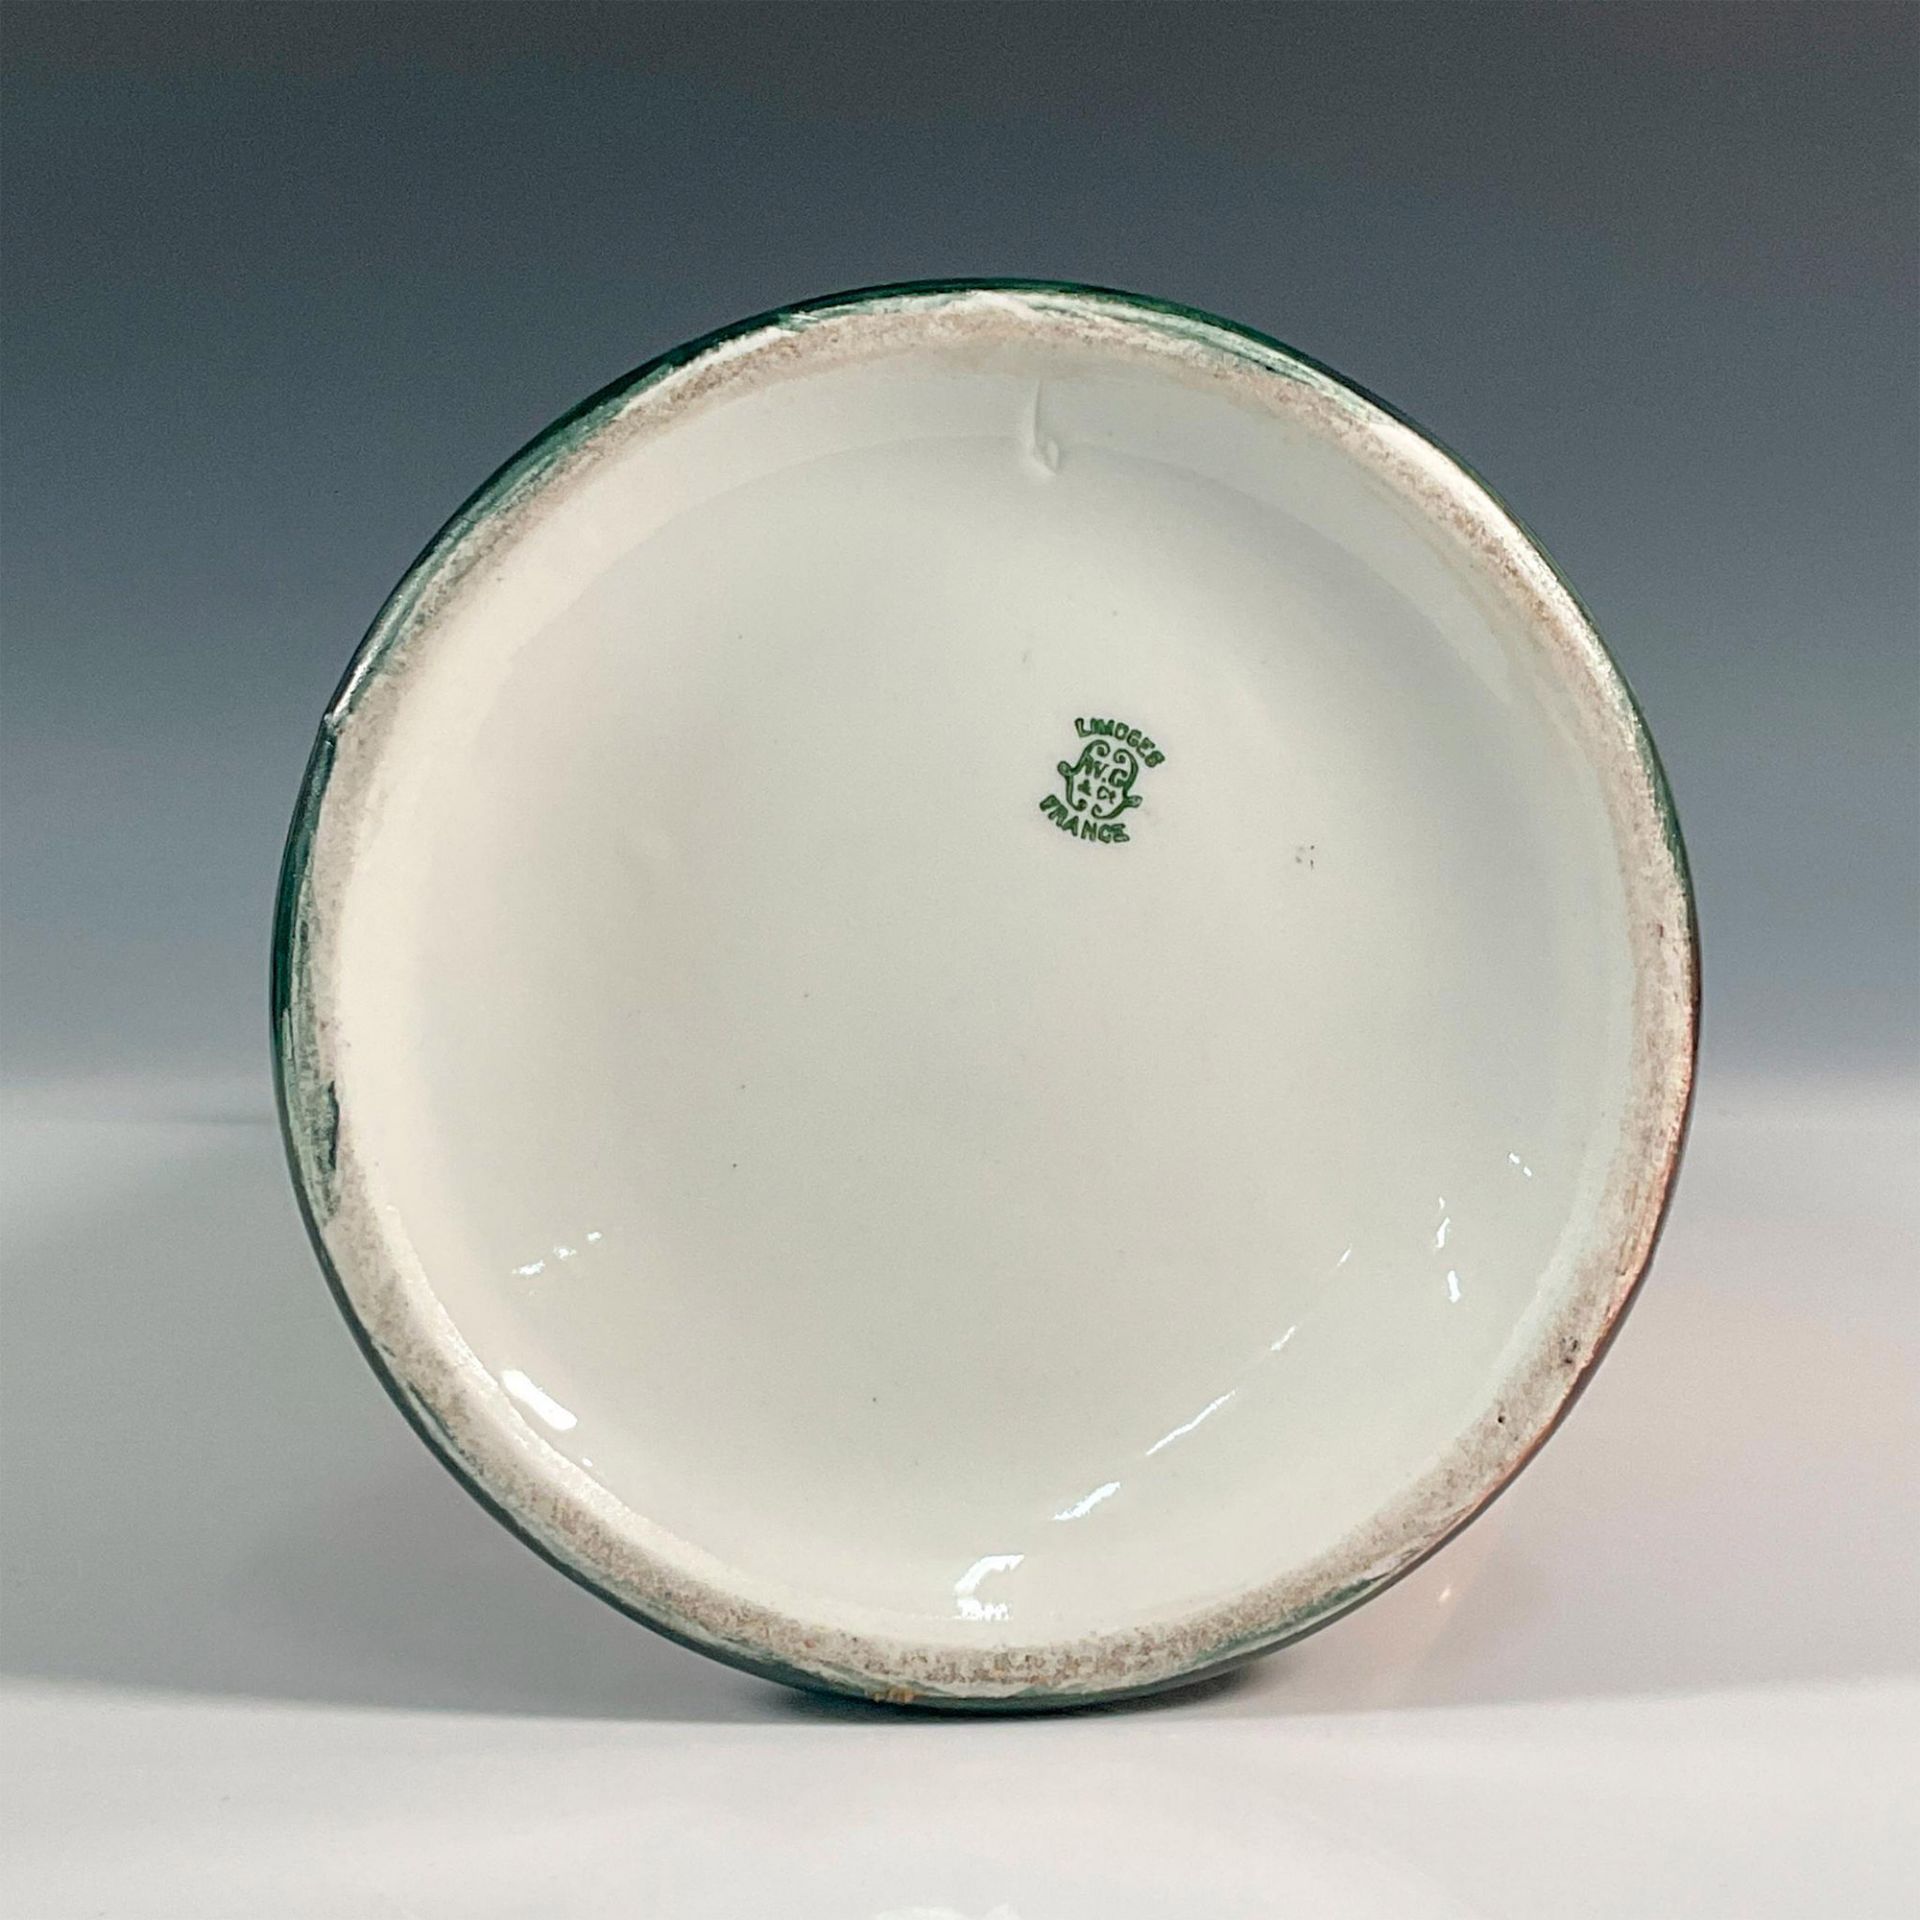 W & G Co. Limoges France, Porcelain Pitcher/Tankard - Image 4 of 4